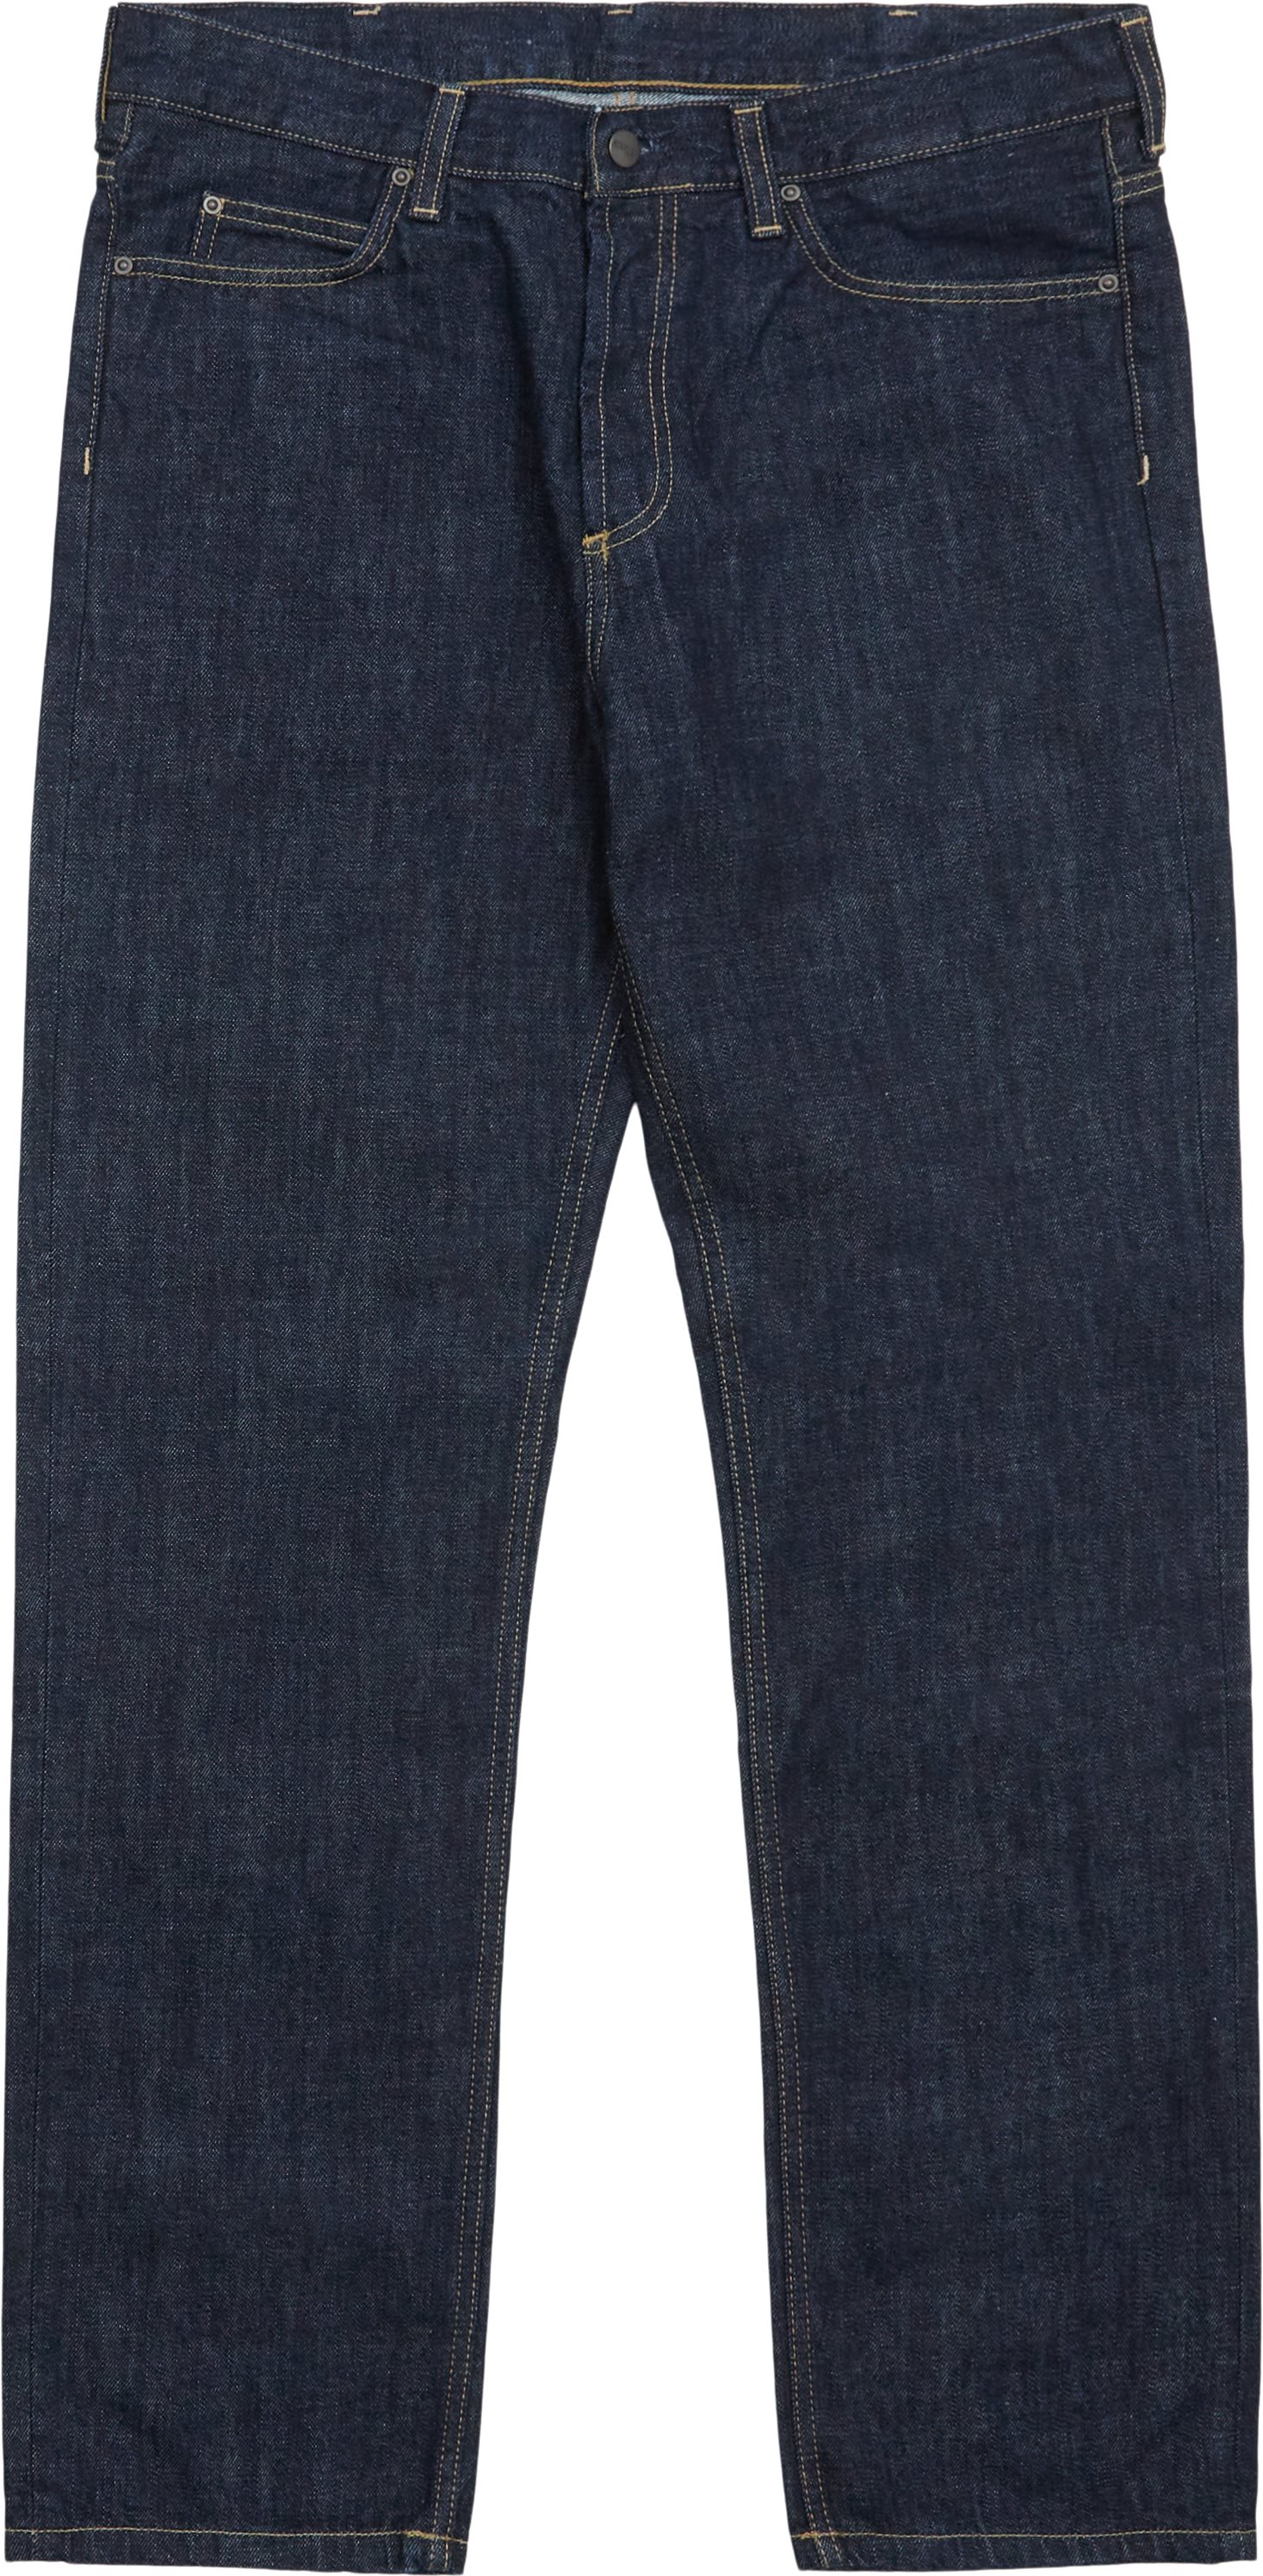 Jeans - Regular fit - Blå